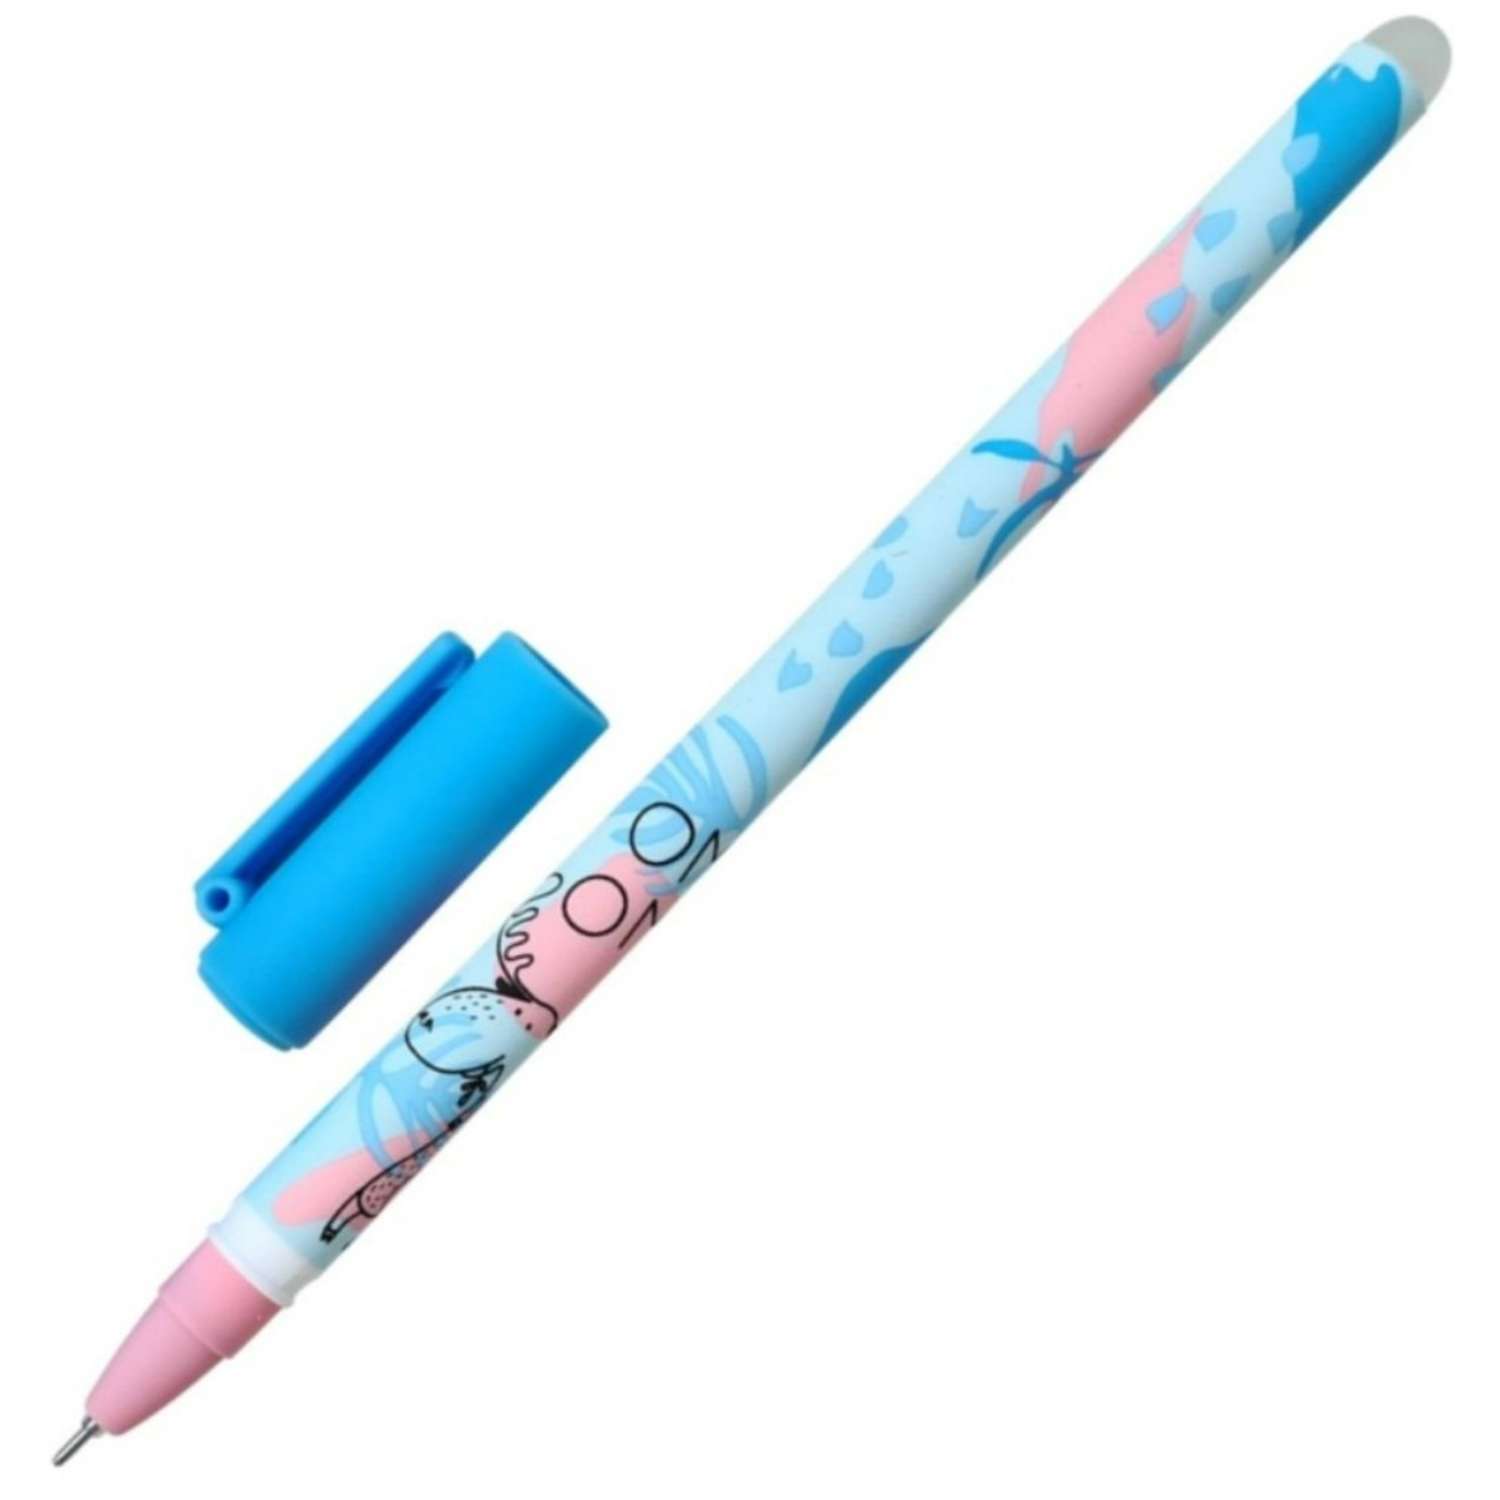 Ручка Be Smart гелевая 0.5 мм черный пиши-стирай fyr-fyr лось 35 штук - фото 1